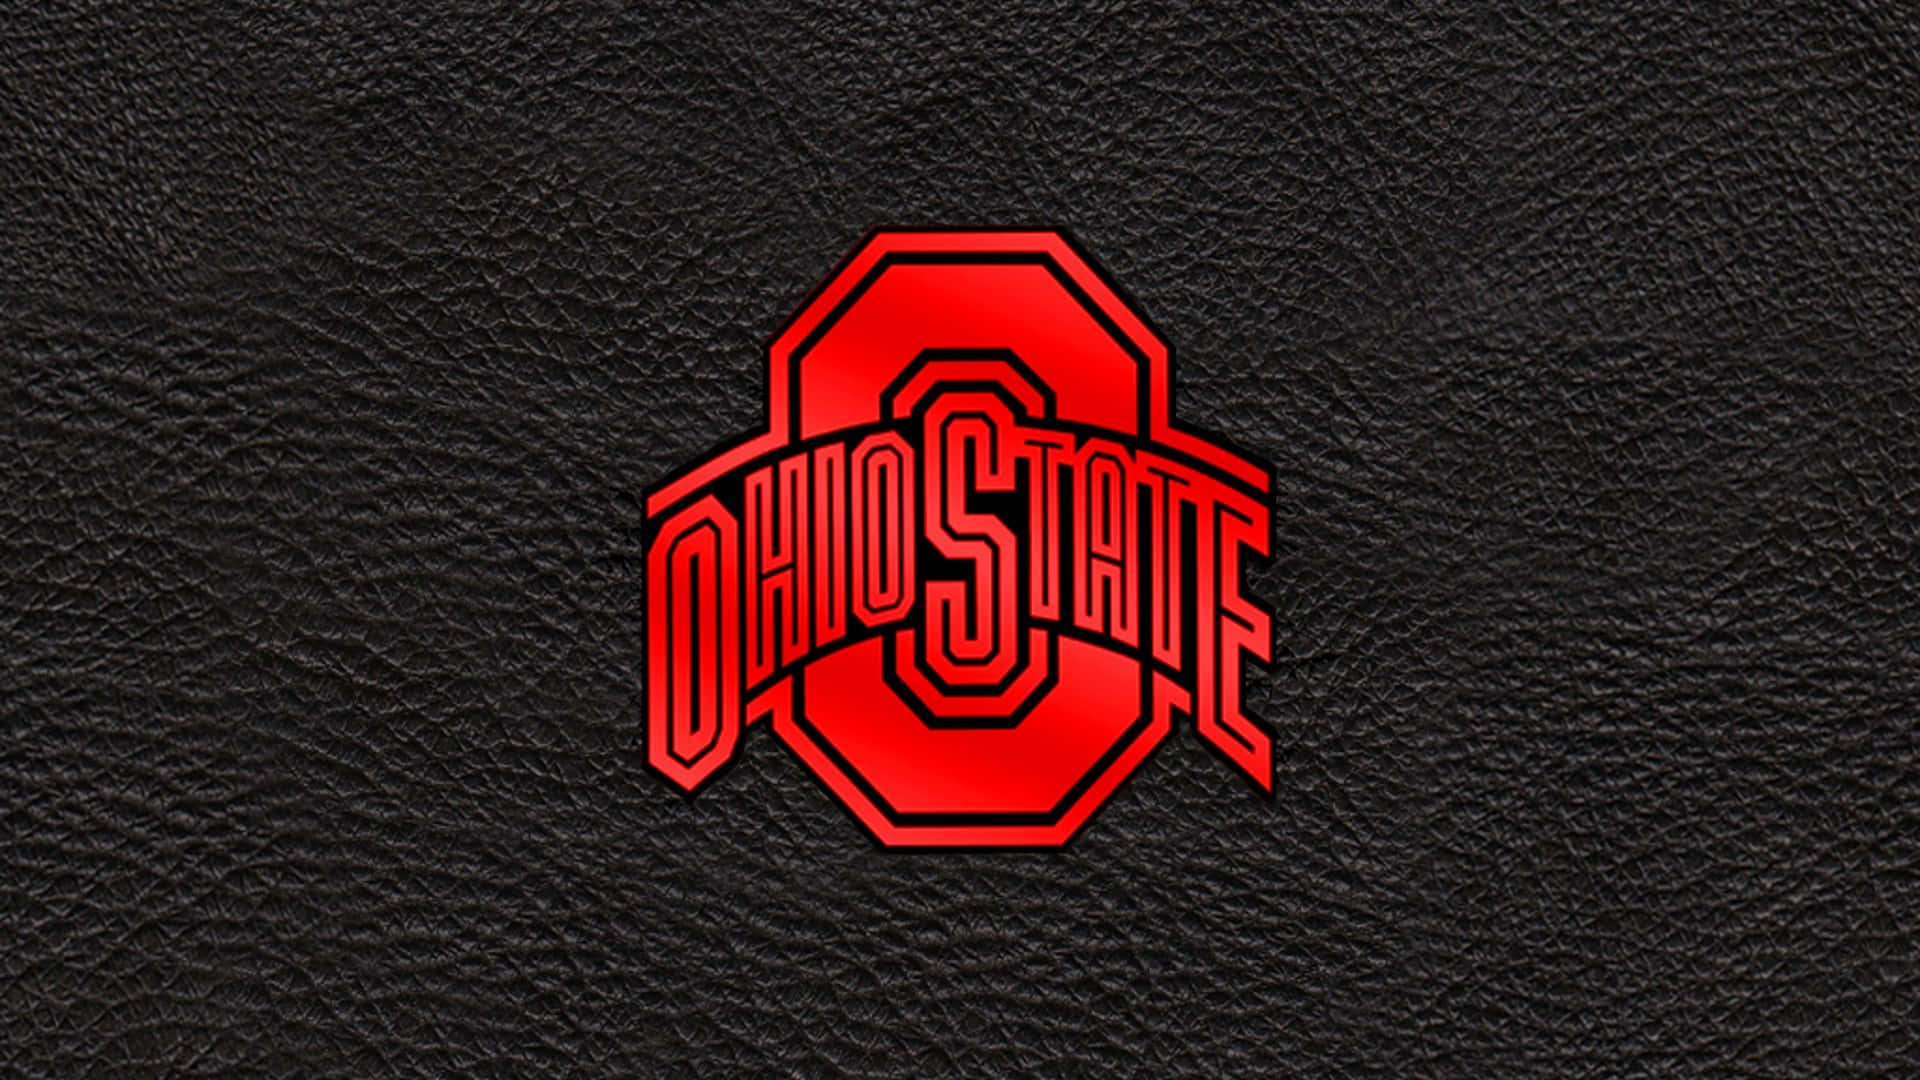 Logoet for Ohio State på en sort læder baggrund. Wallpaper